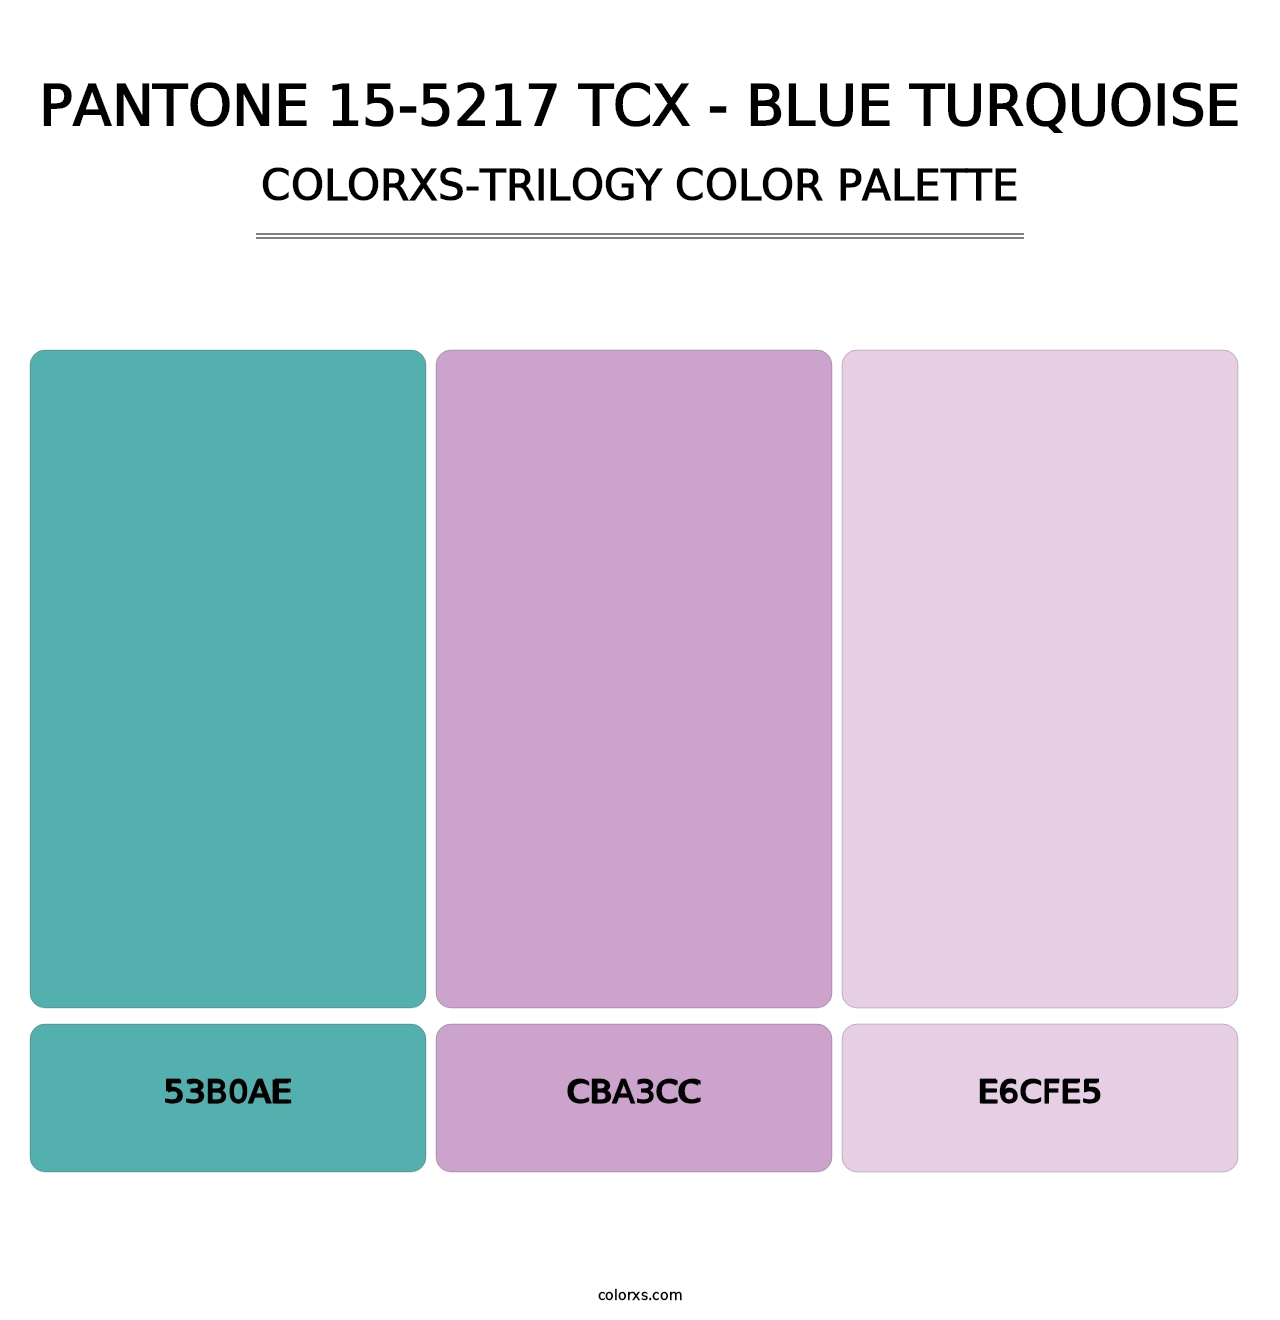 PANTONE 15-5217 TCX - Blue Turquoise - Colorxs Trilogy Palette